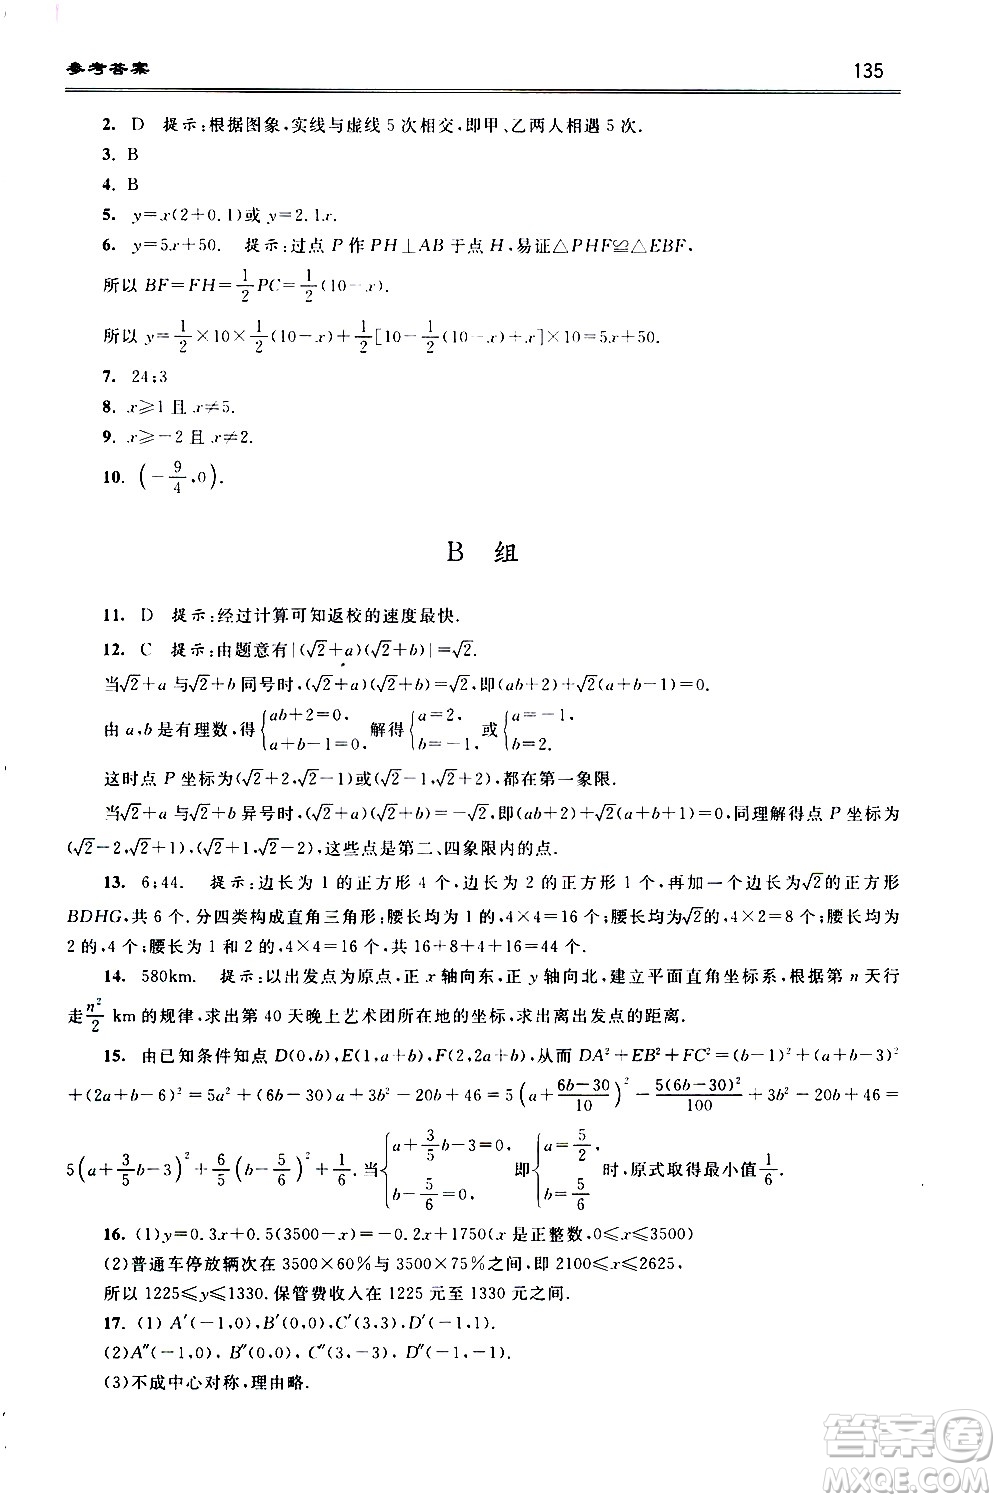 浙江大学出版社2021年初中数学培优题解题方法与阶梯训练七年级答案